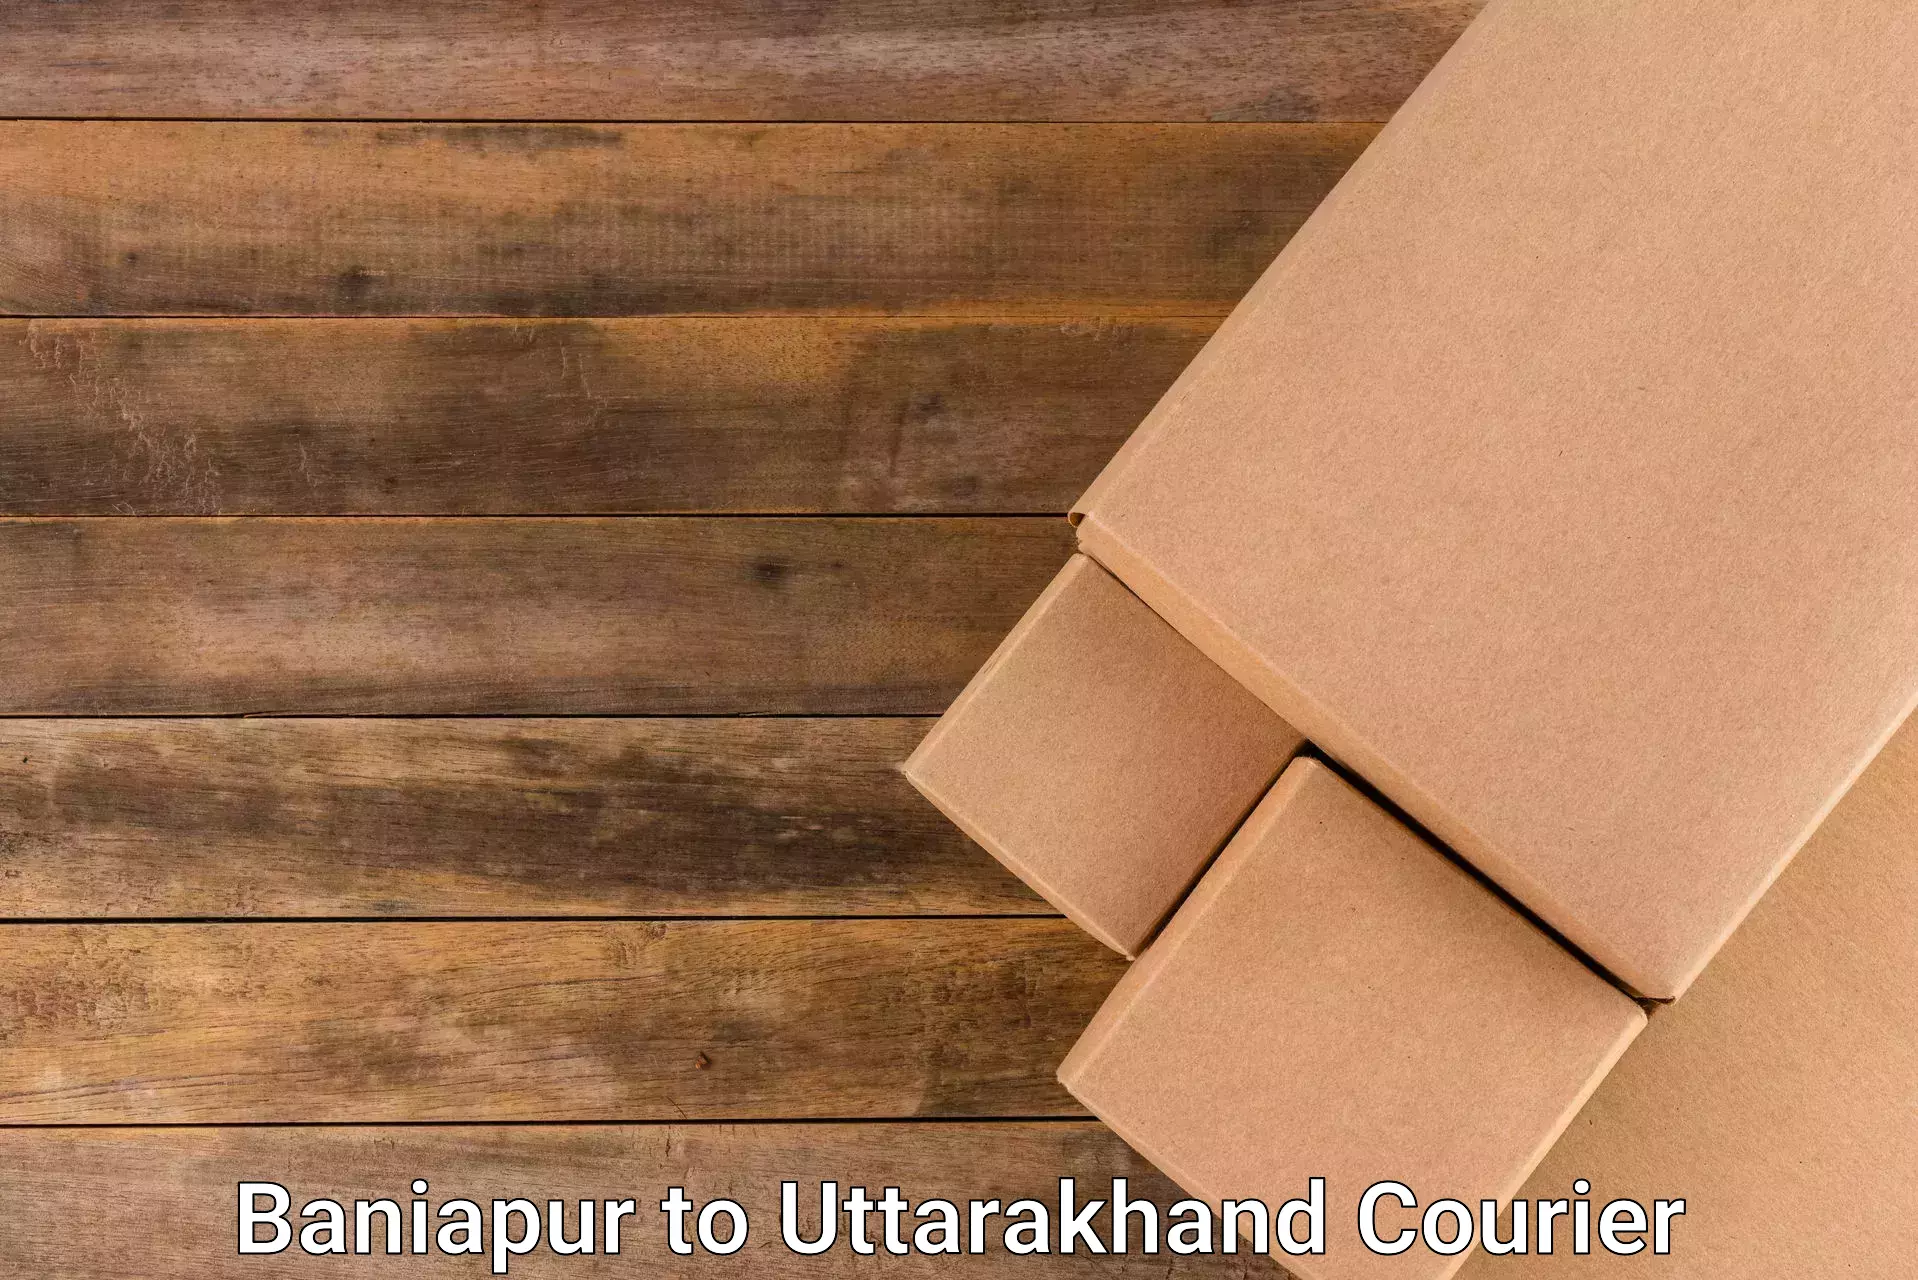 Regular parcel service in Baniapur to Uttarakhand